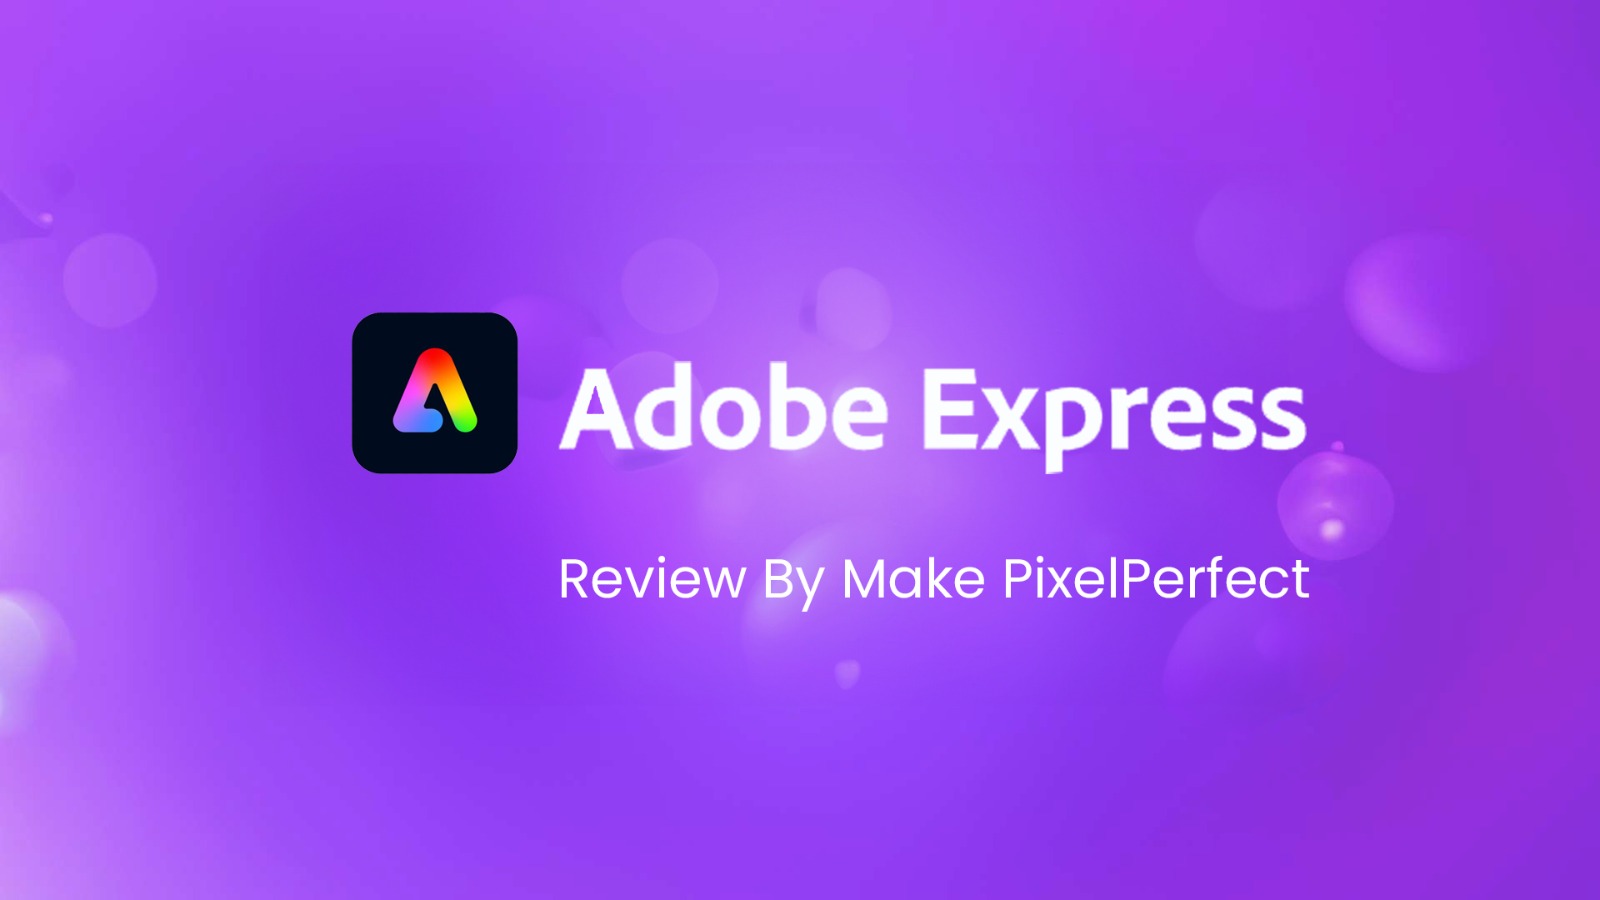 Adobe Express Review www.makepixelperfect.com